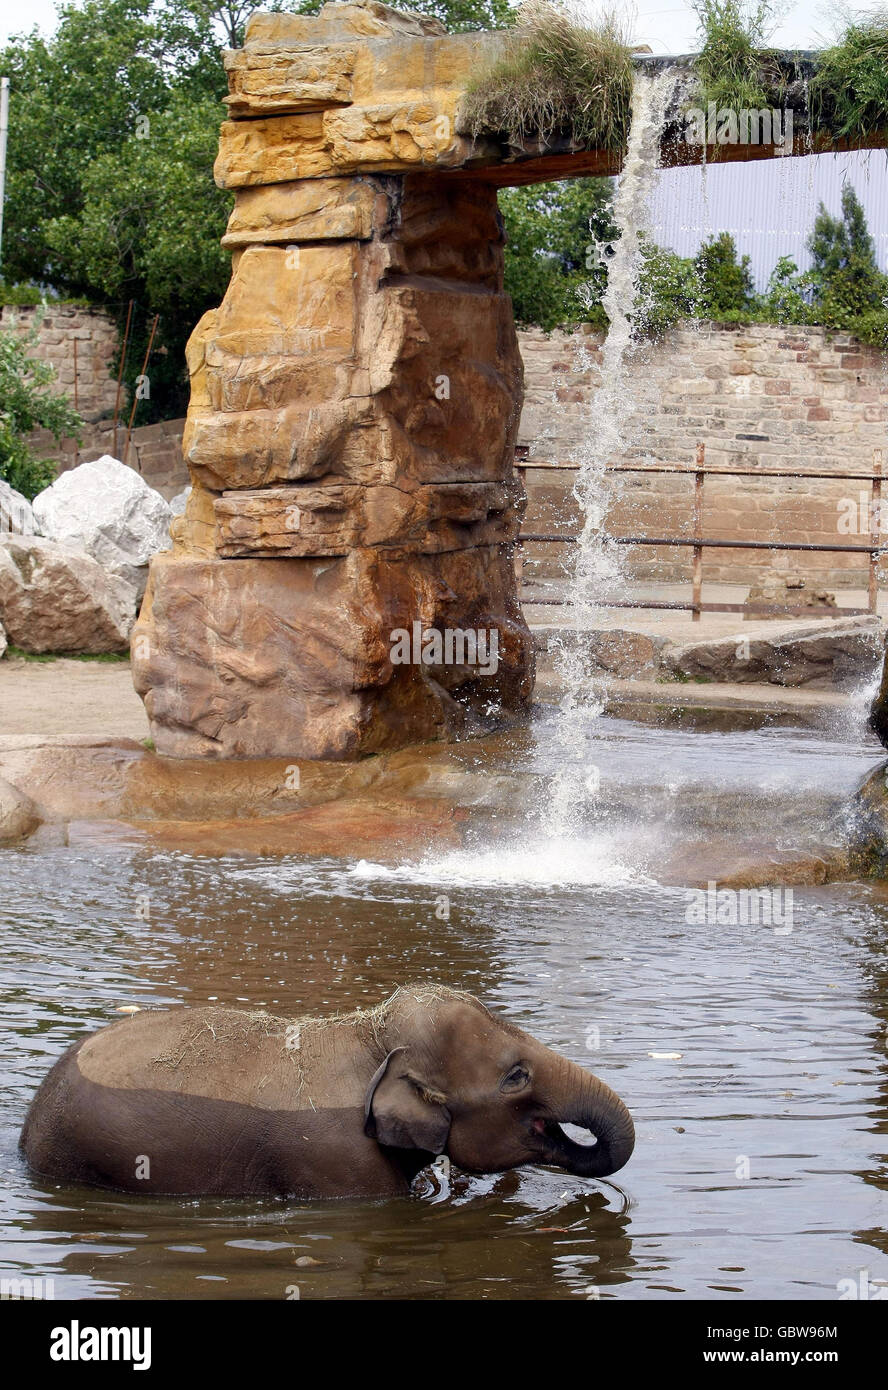 Ein Elefantenbaby kühlt sich bei den heißen Temperaturen ab, indem es im Pool des Chester Zoos baden. Stockfoto